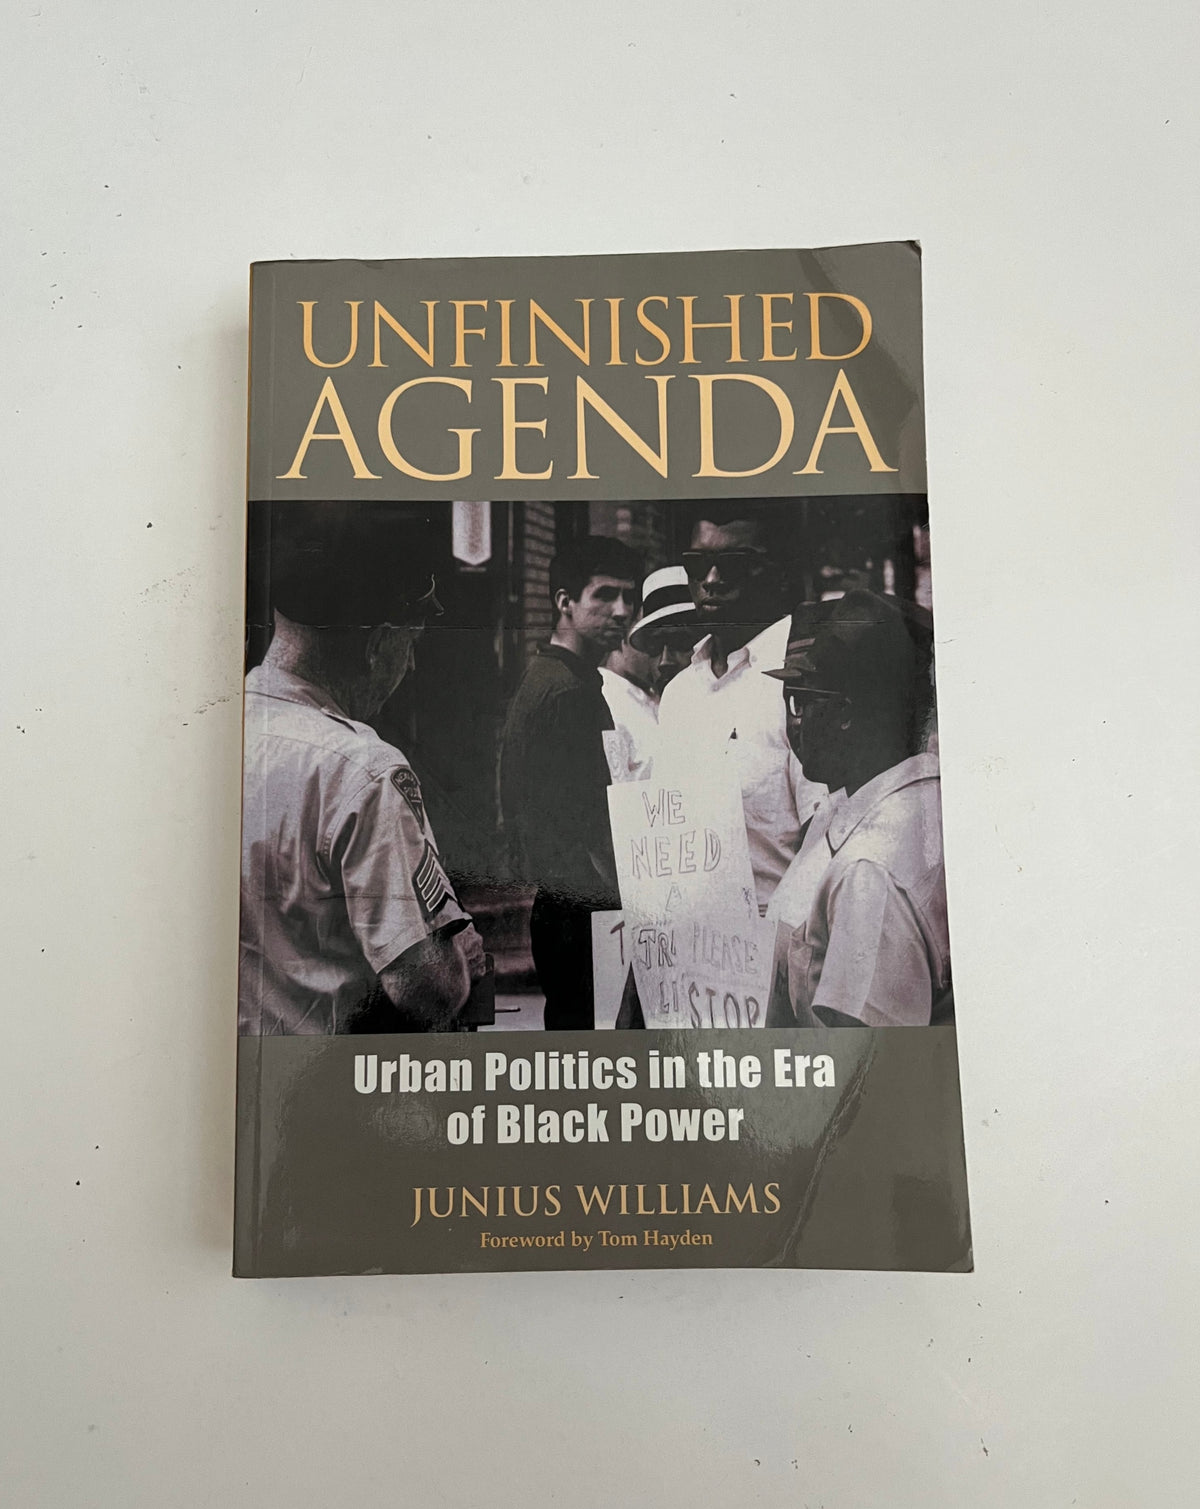 Unfinished Agenda: Urban Politics in the Era of Black Power by Junius Williams